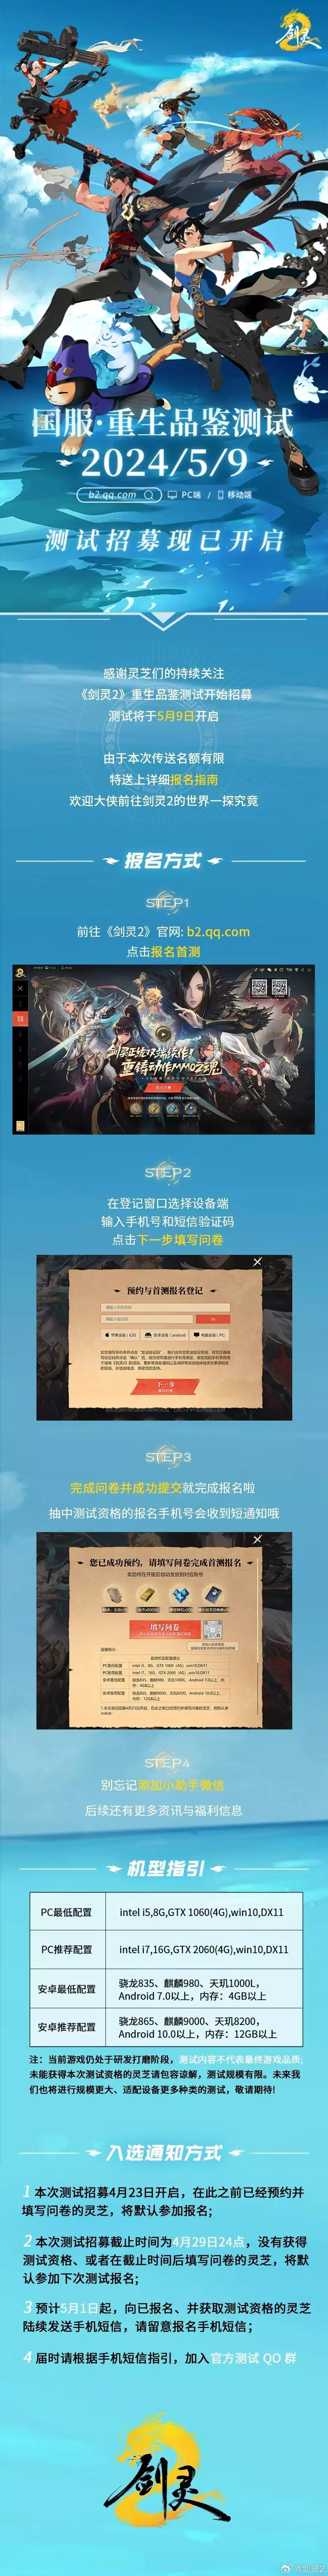 腾讯游戏《剑灵2》新视频国服首测招募开启藏娇